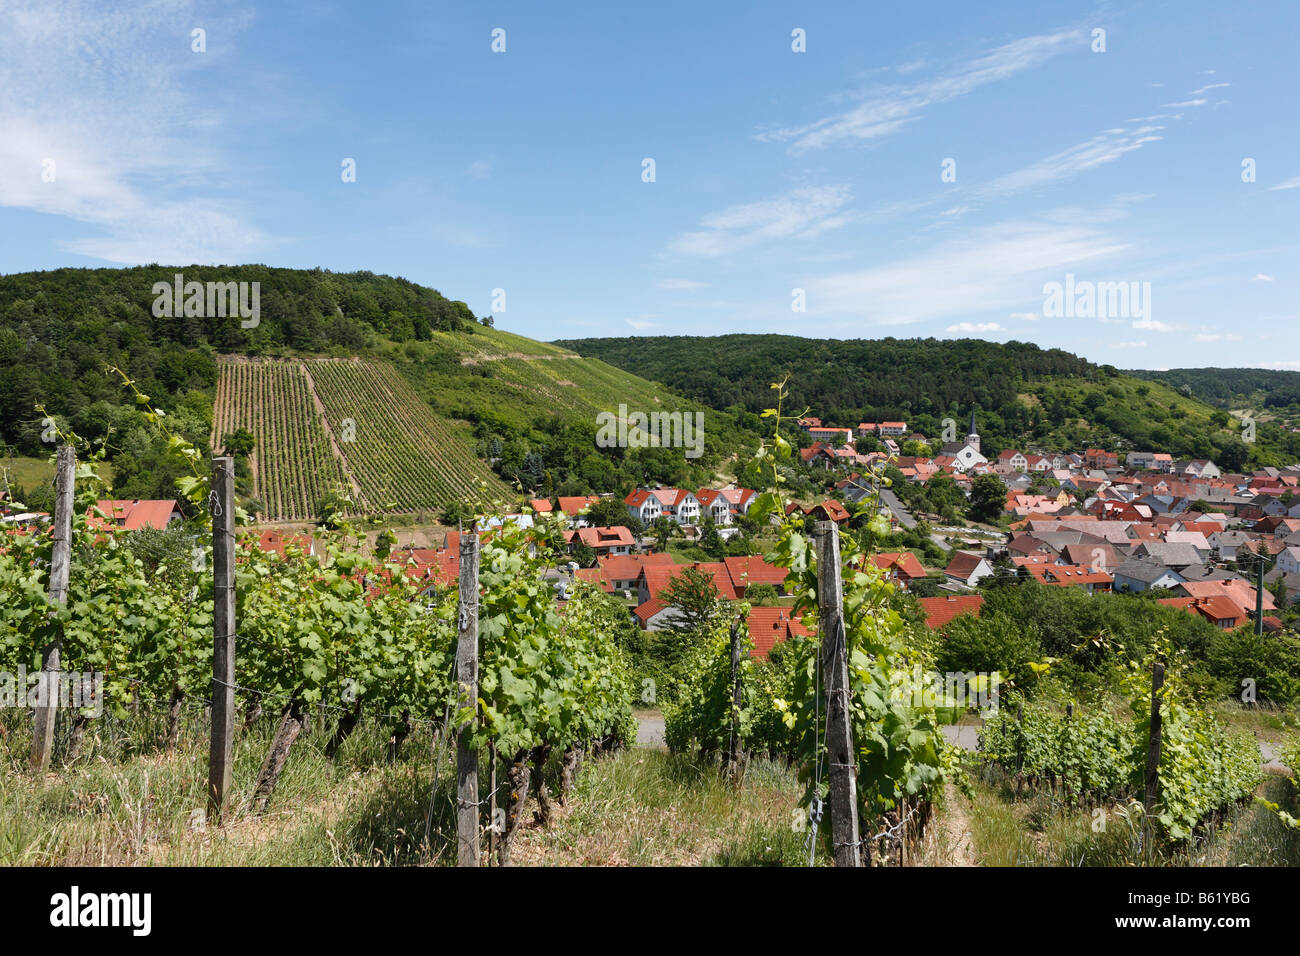 Vineyard in Ramsthal, Rhoen, Lower Franconia, Bavaria, Germany, Europe Stock Photo